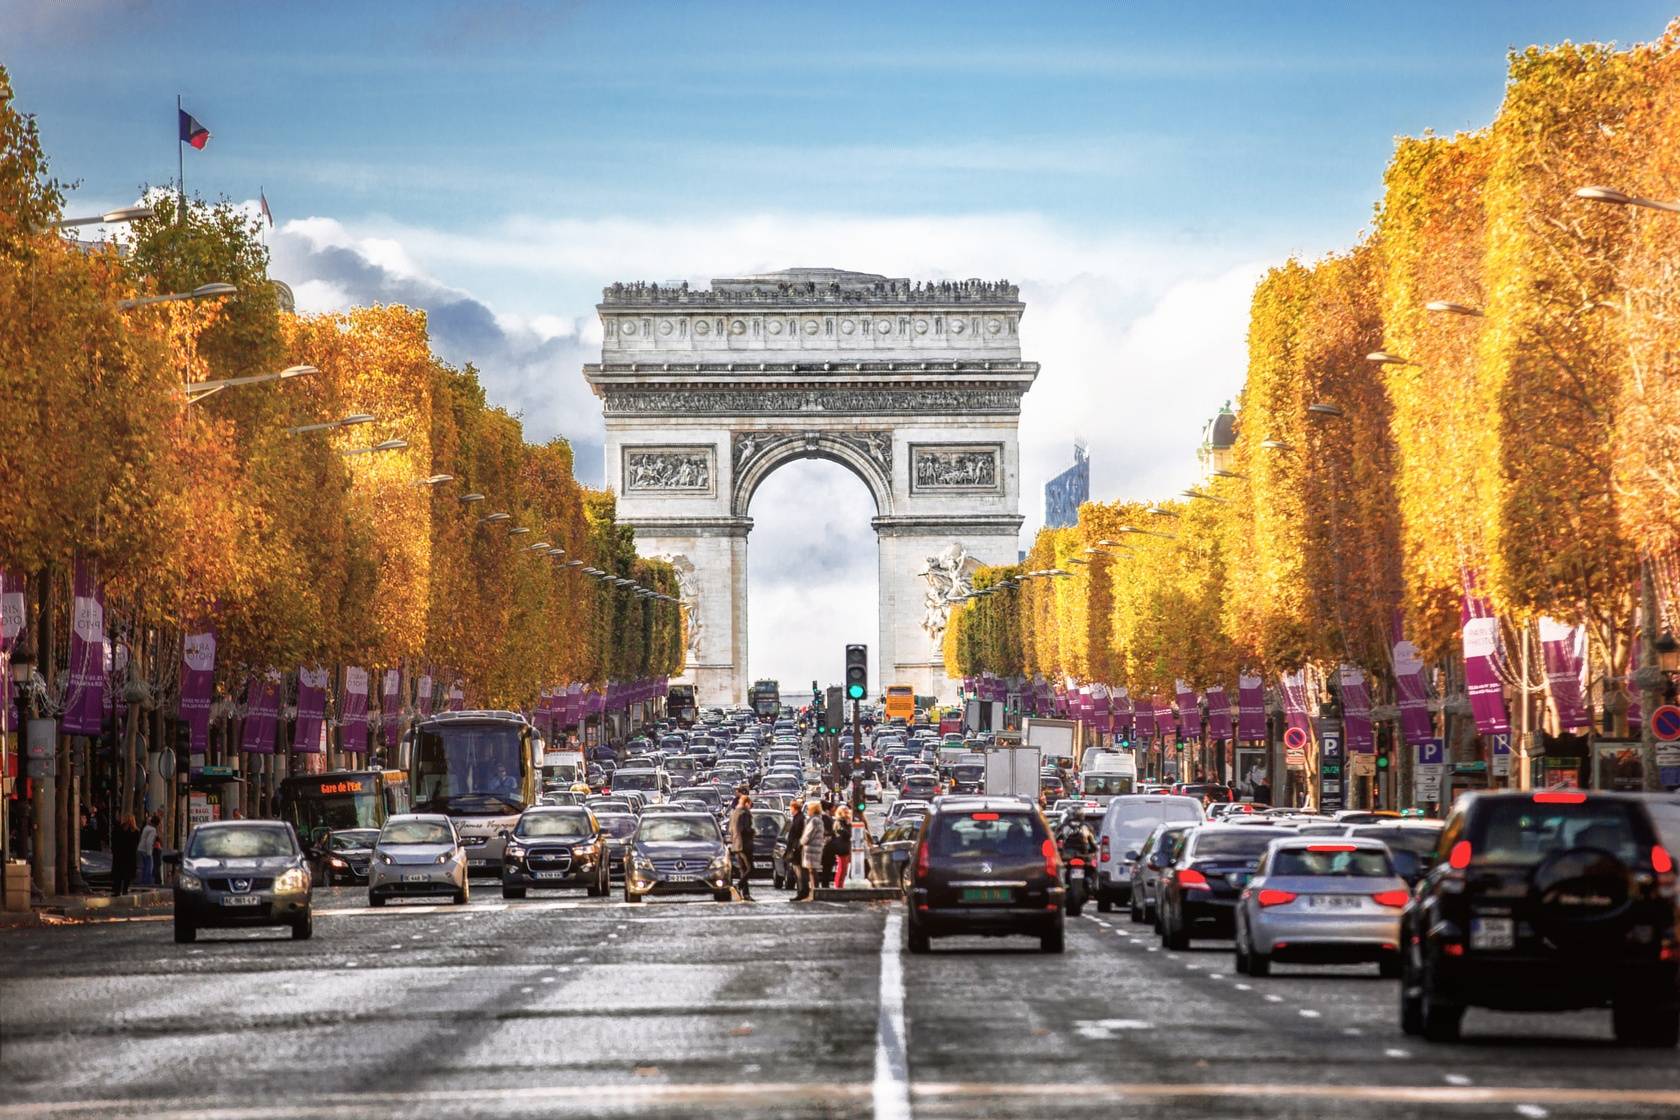 下载壁纸 巴黎, 艾菲尔铁塔, 法国 免费为您的桌面分辨率的壁纸 1920x1186 — 图片 №582432